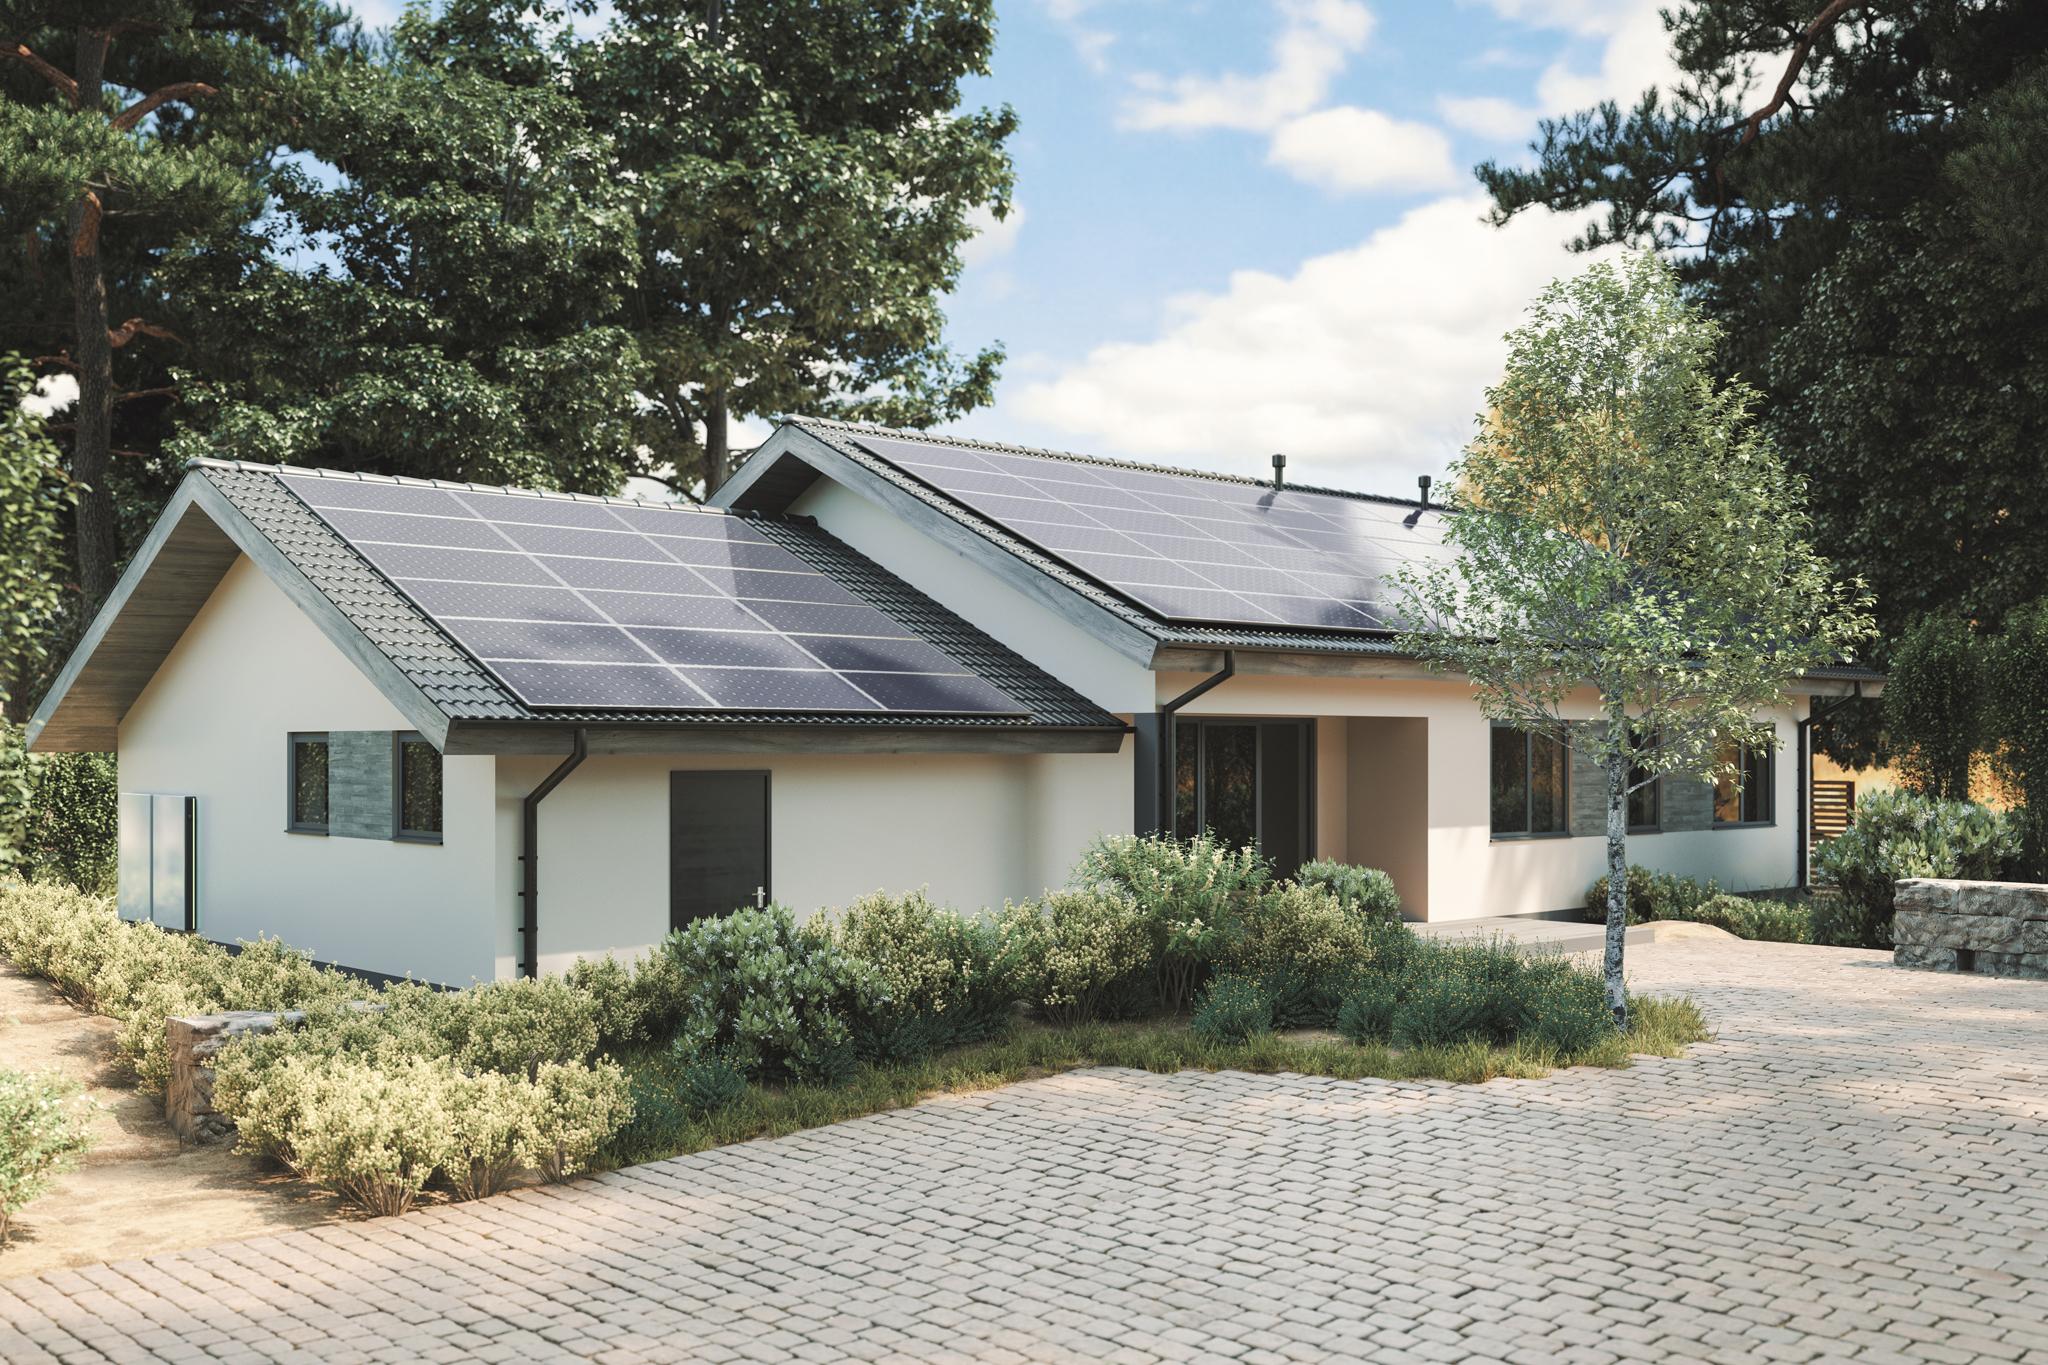 Einfamilienhaus mit PV-Anlage auf dem Dach - Klimaanlage mit Solar betreiben